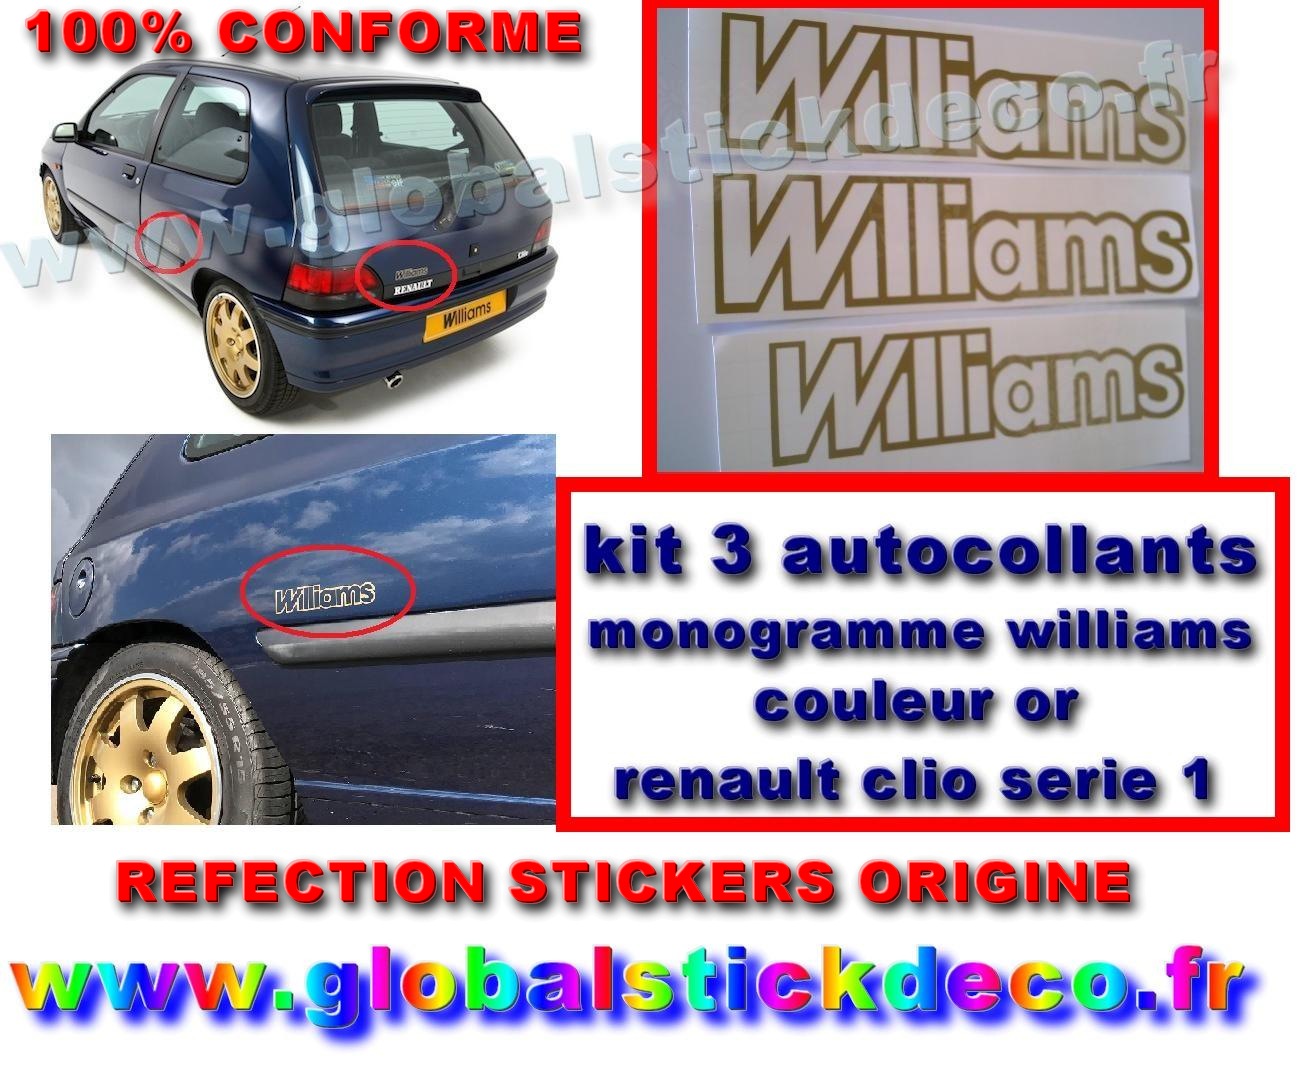 Renault clio williams 16